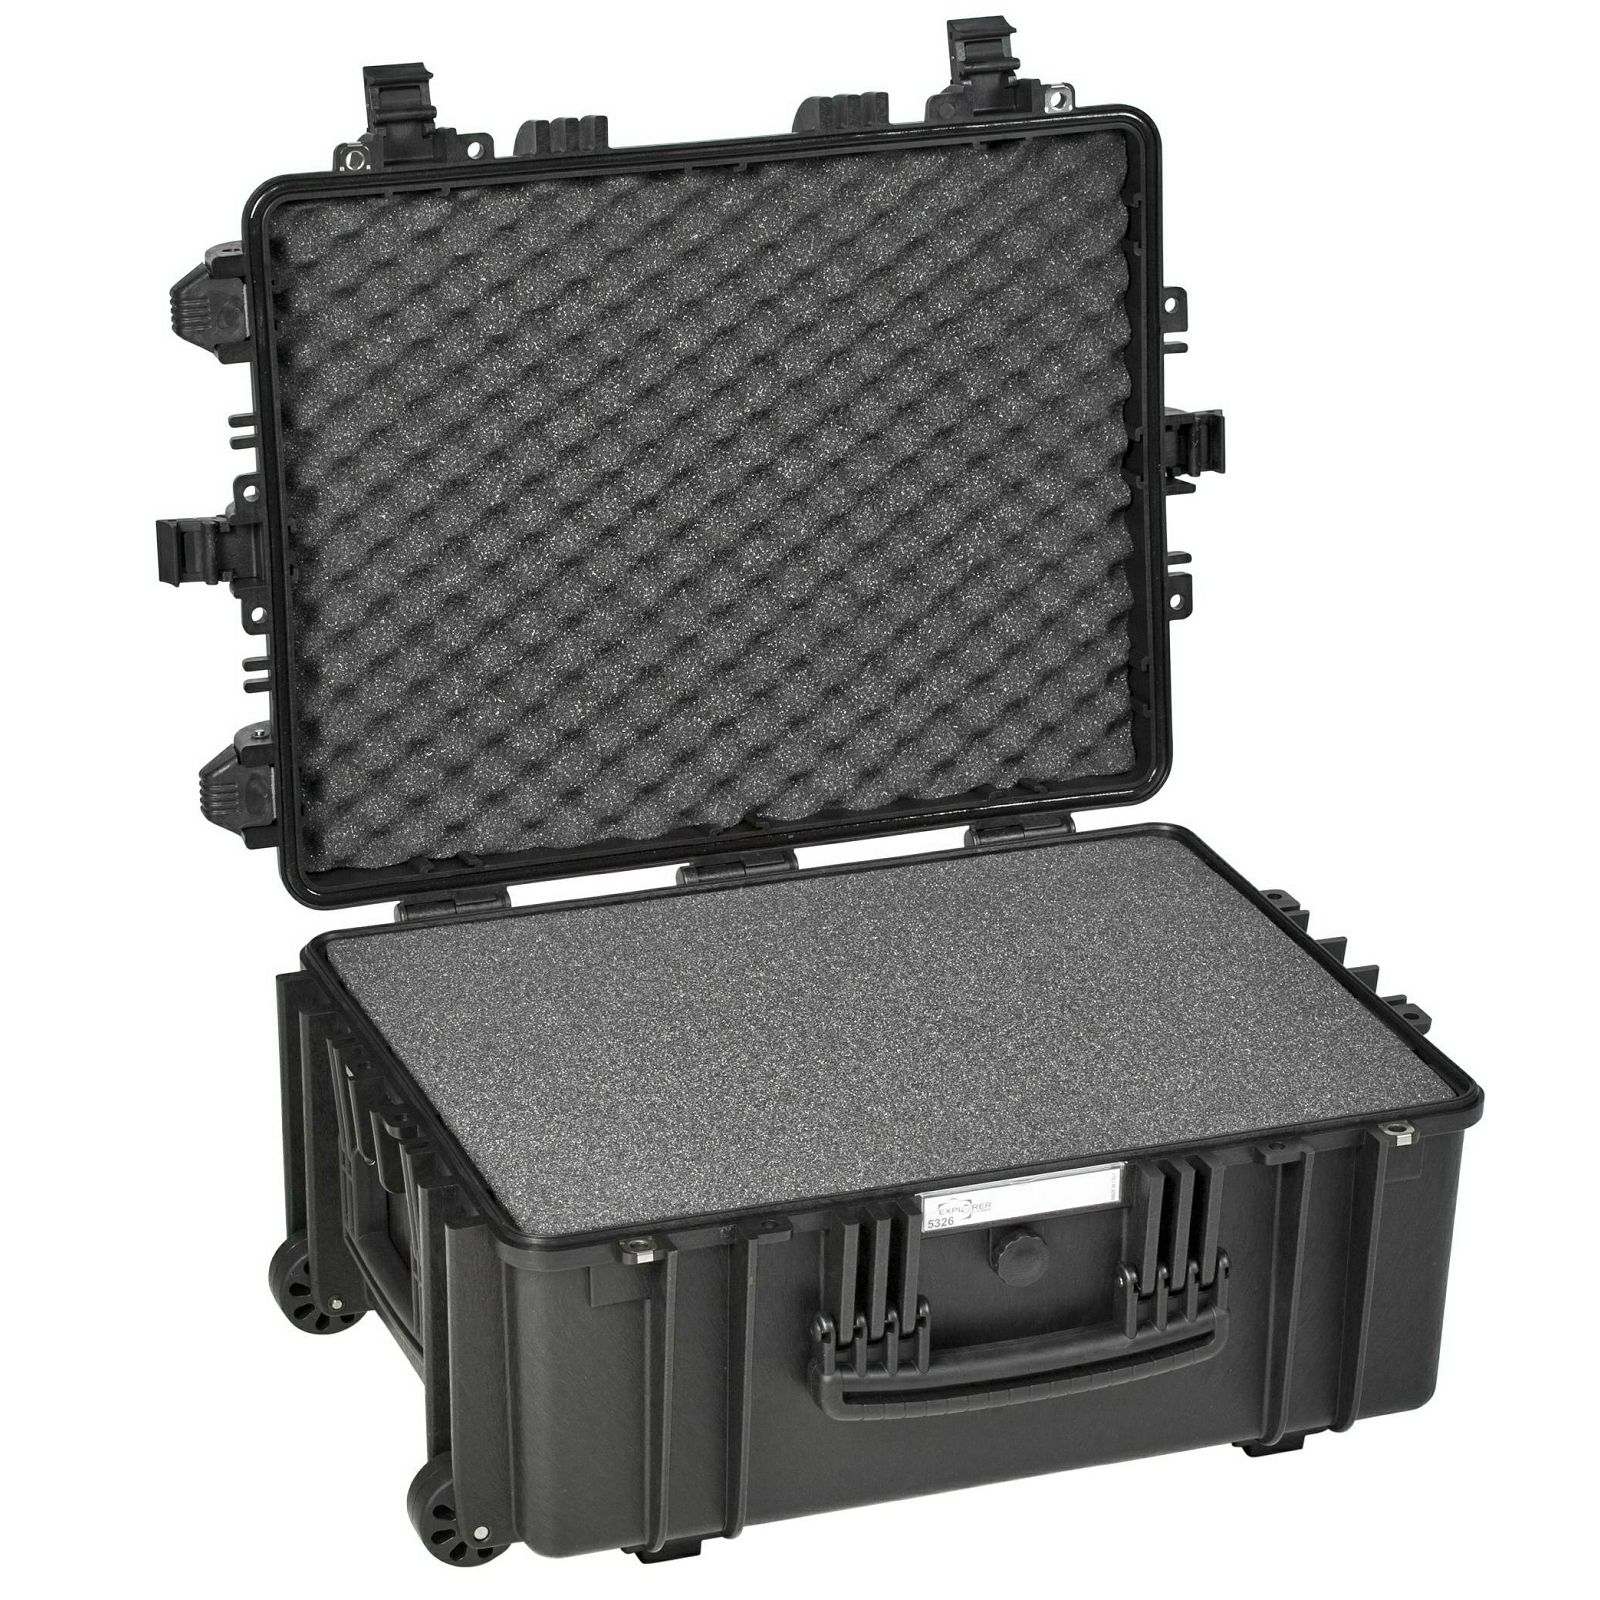 Explorer Cases 5326 Black Foam 627x475x292mm kufer za foto opremu kofer Camera Case